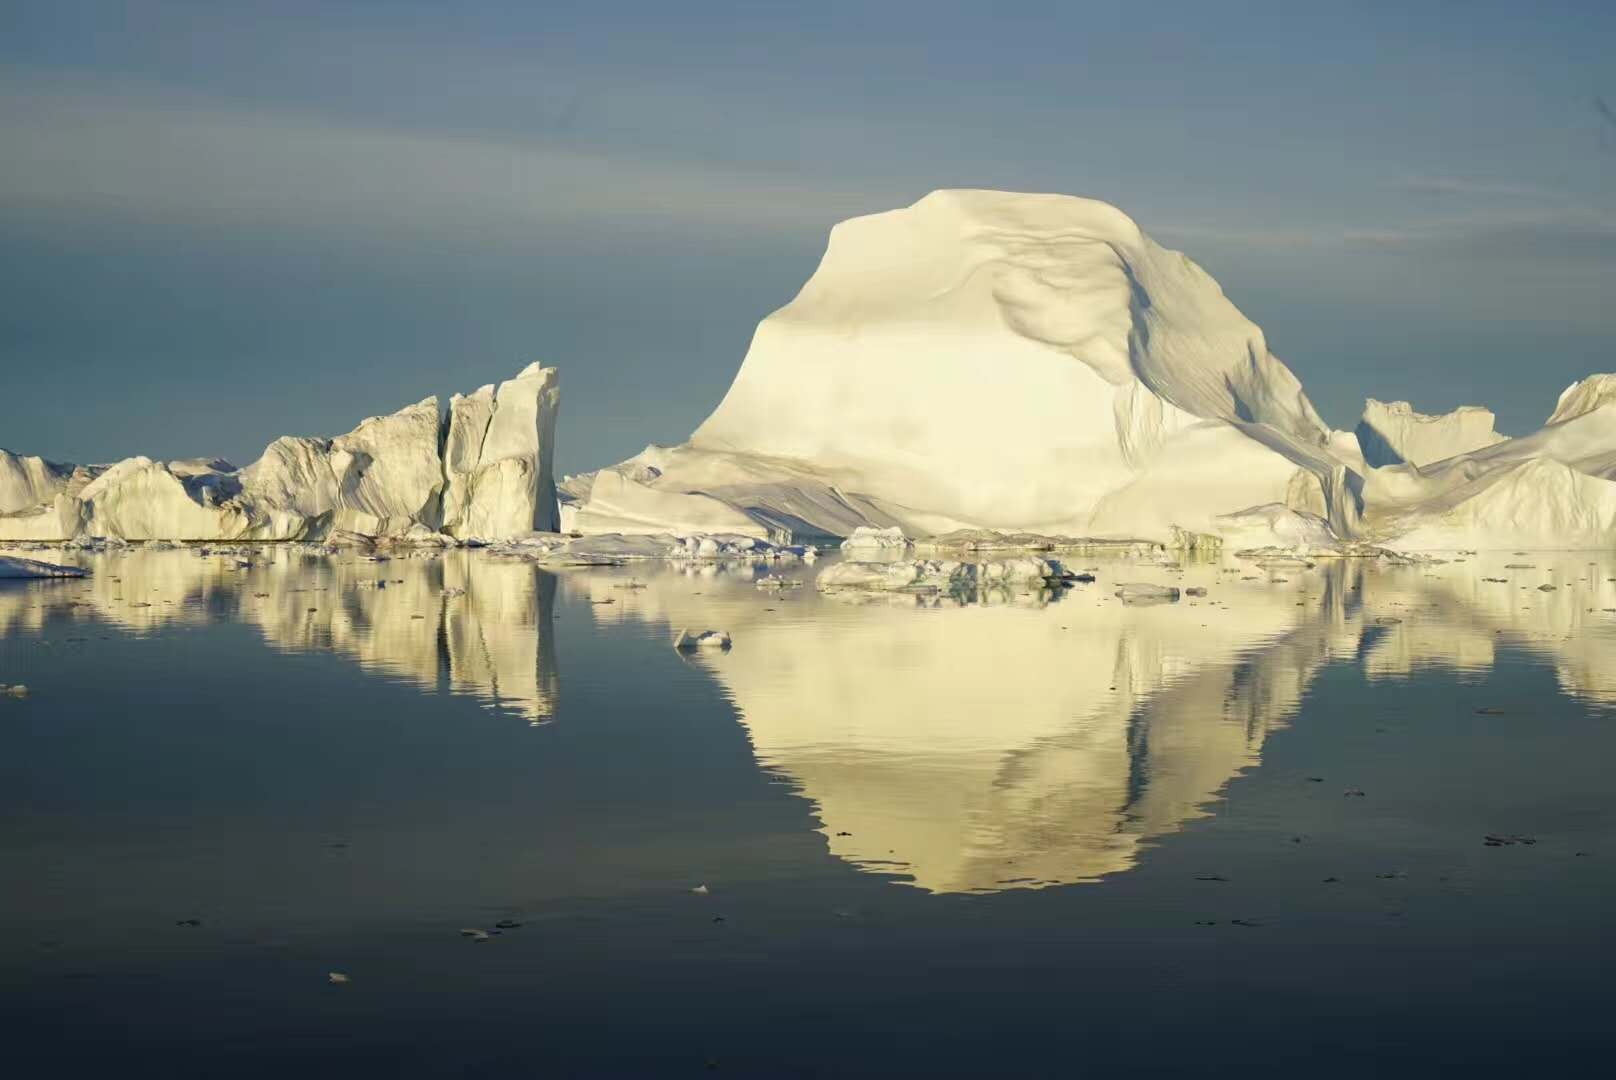 【北极预售】中国人包船北极+格陵兰岛摄影巡游16天团 红士邮轮